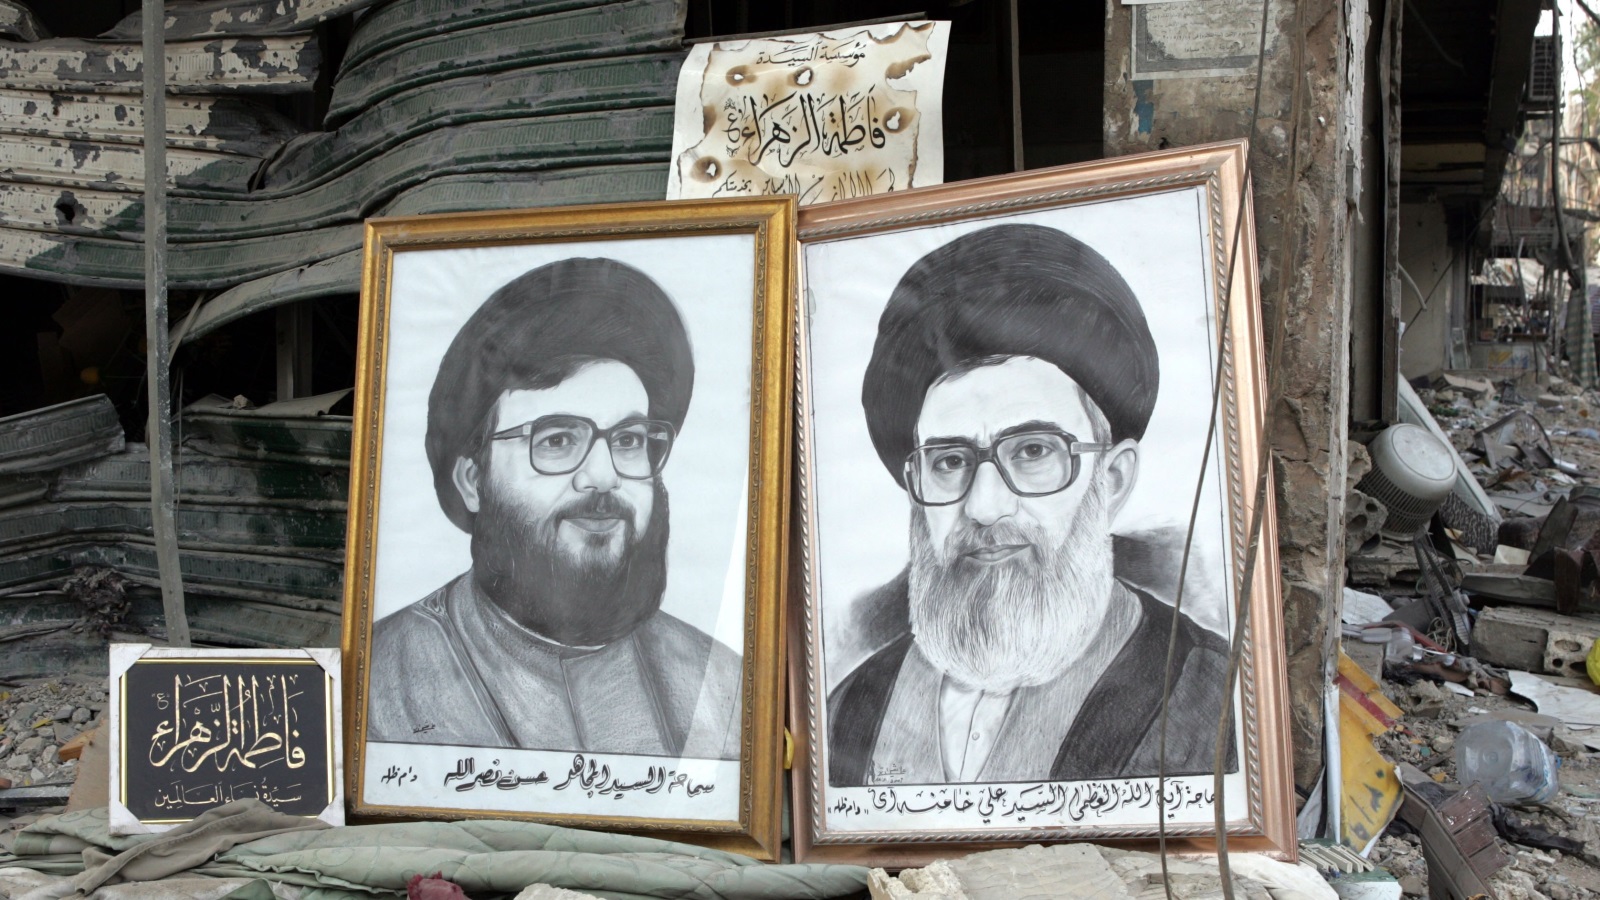 عززت إيران نفوذها في لبنان من خلال حزب الله بشكل رئيس، وعملت على تمويله وتدريبه وتوجيهه وتوظيفه أداة لتوسعة مدى نفوذها وقدرتها على السيطرة